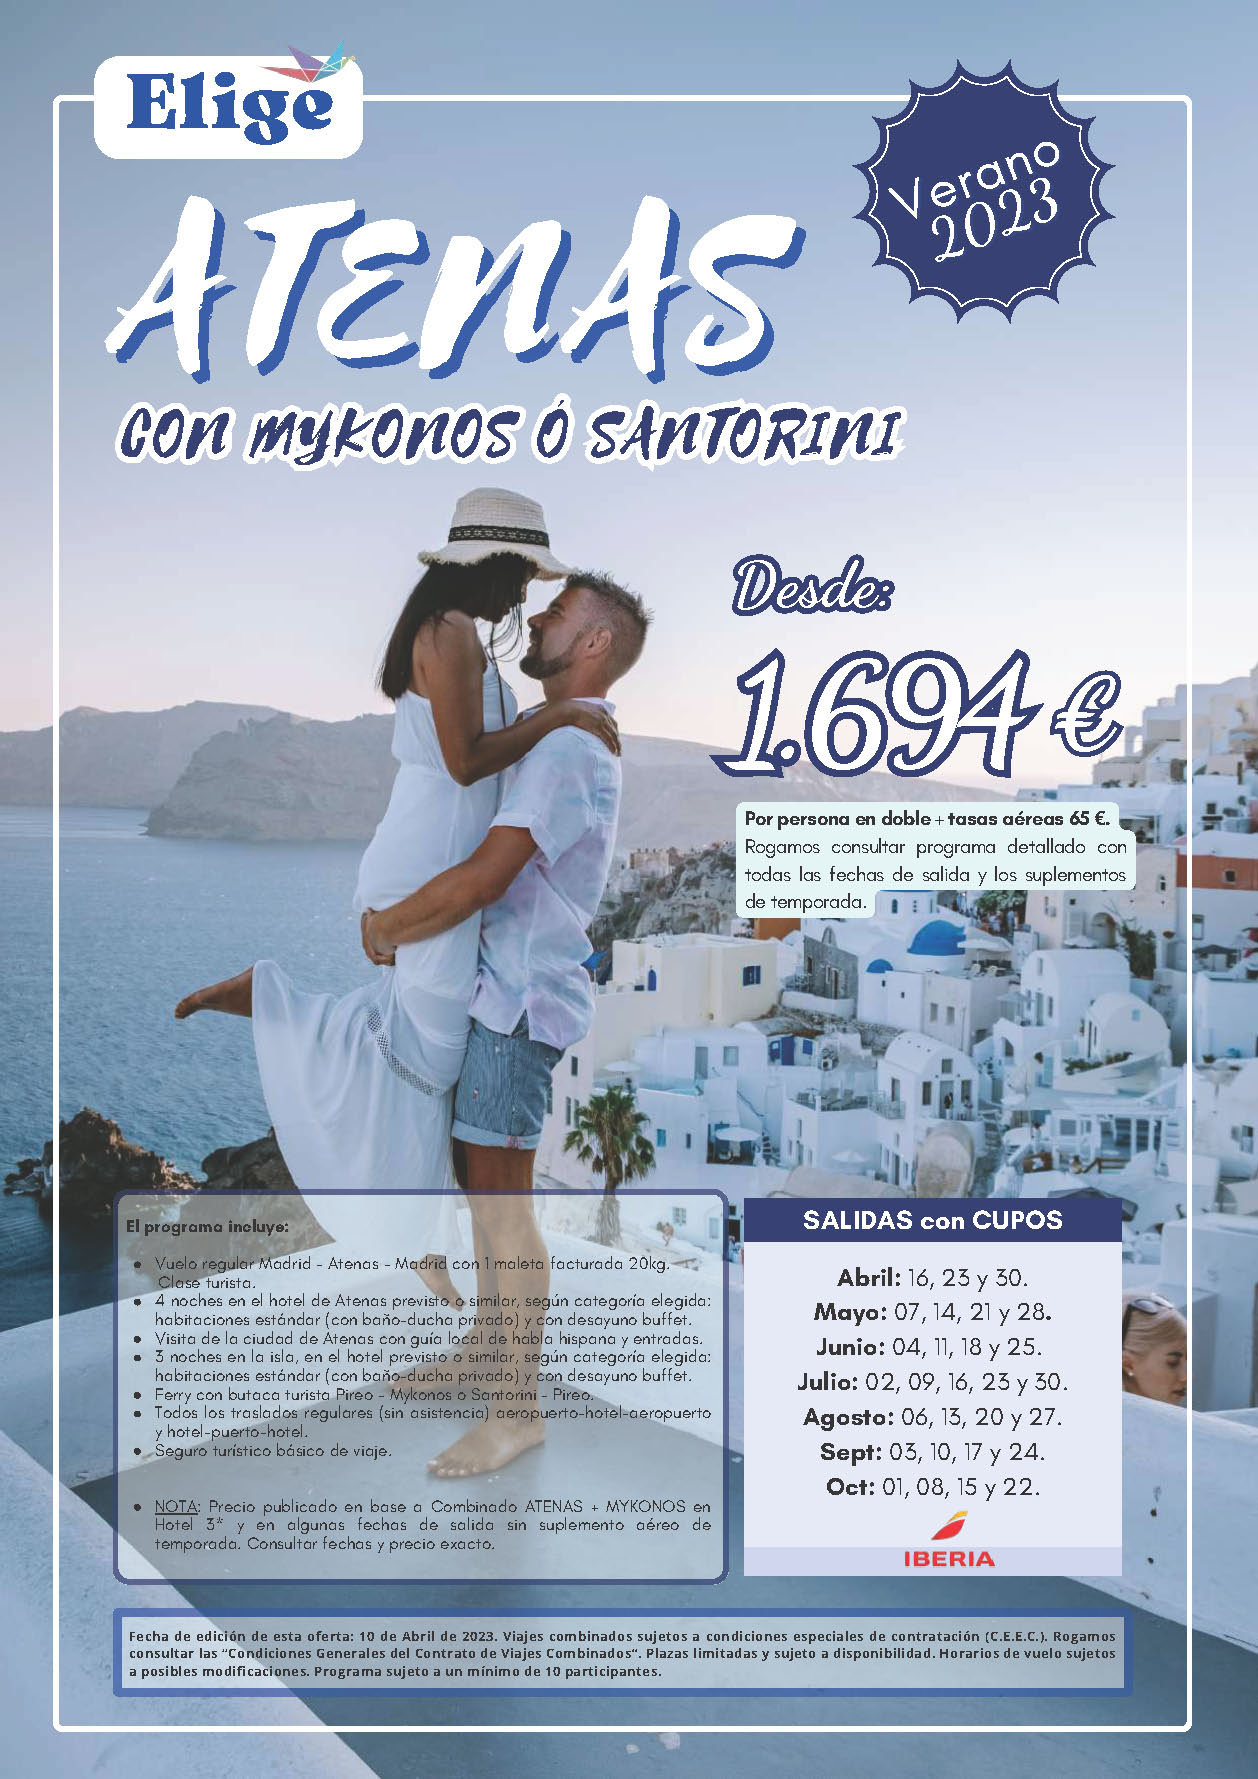 Oferta Elige tu Viaje Verano 2023 circuito Grecia con Mykonos o Santorini 8 dias salidas desde Madrid vuelos Iberia cupos